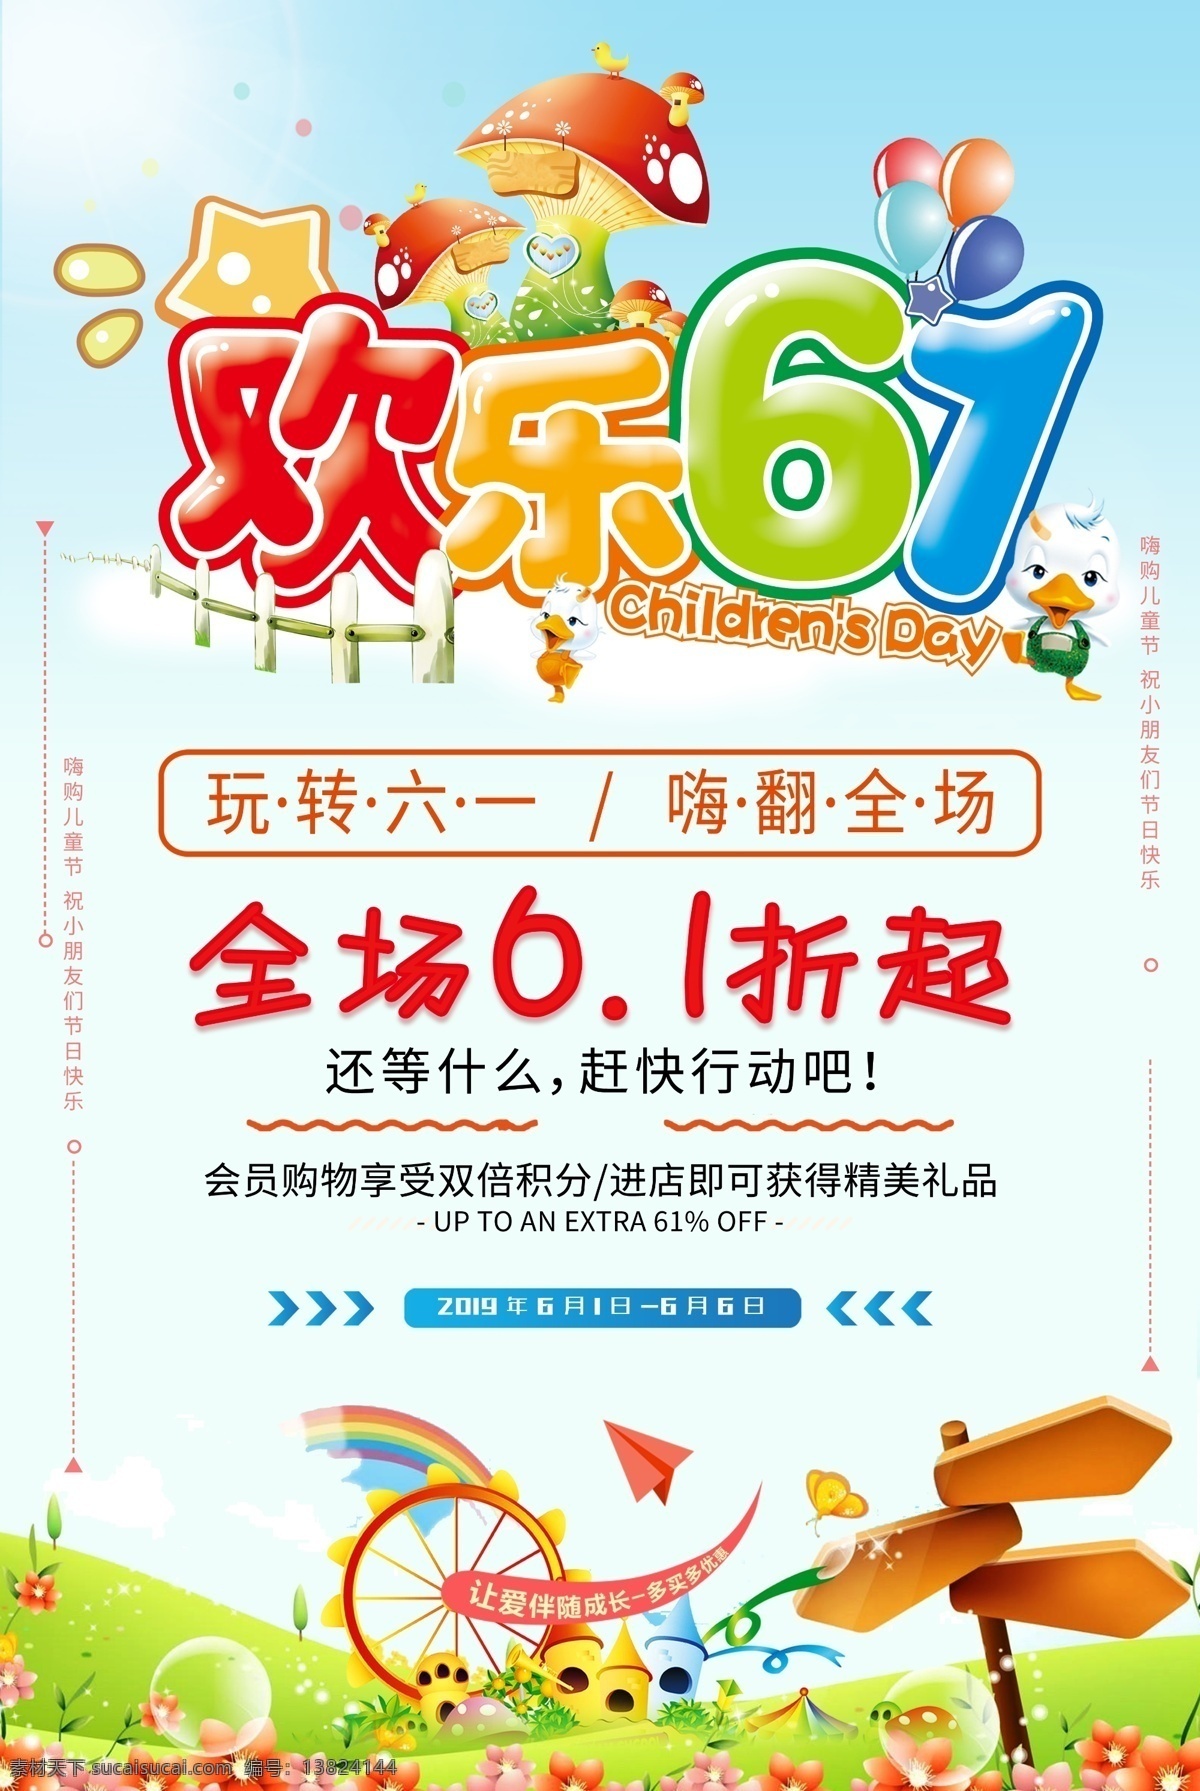 彩色 清新 风 61 儿童节 节日 海报 设 清新风 六一